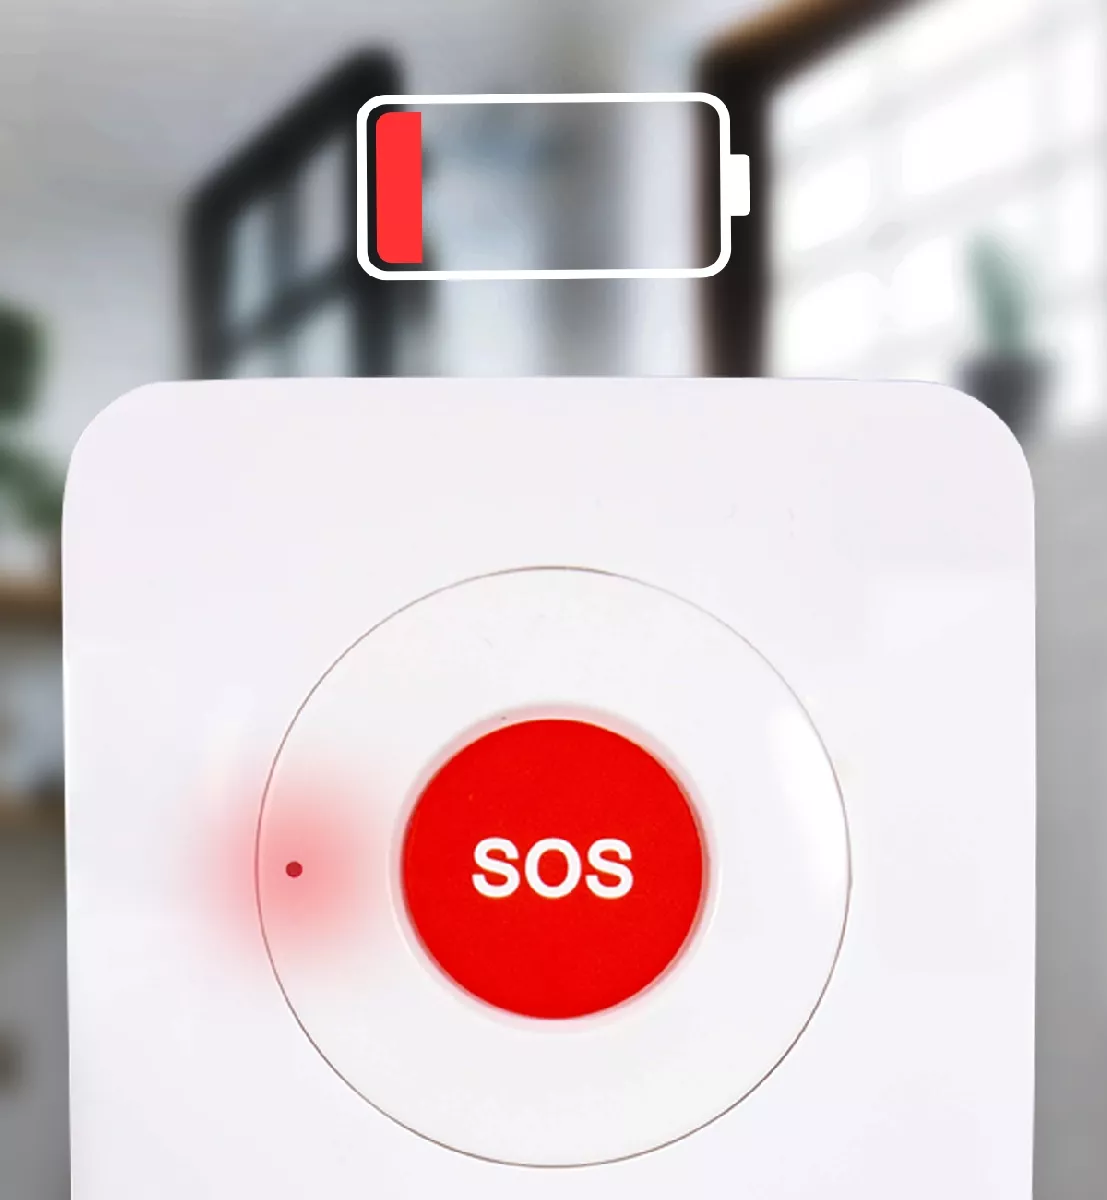 Alerte visuelle "piles faibles" via témoin lumineux situé en façade du bouton SOS)
